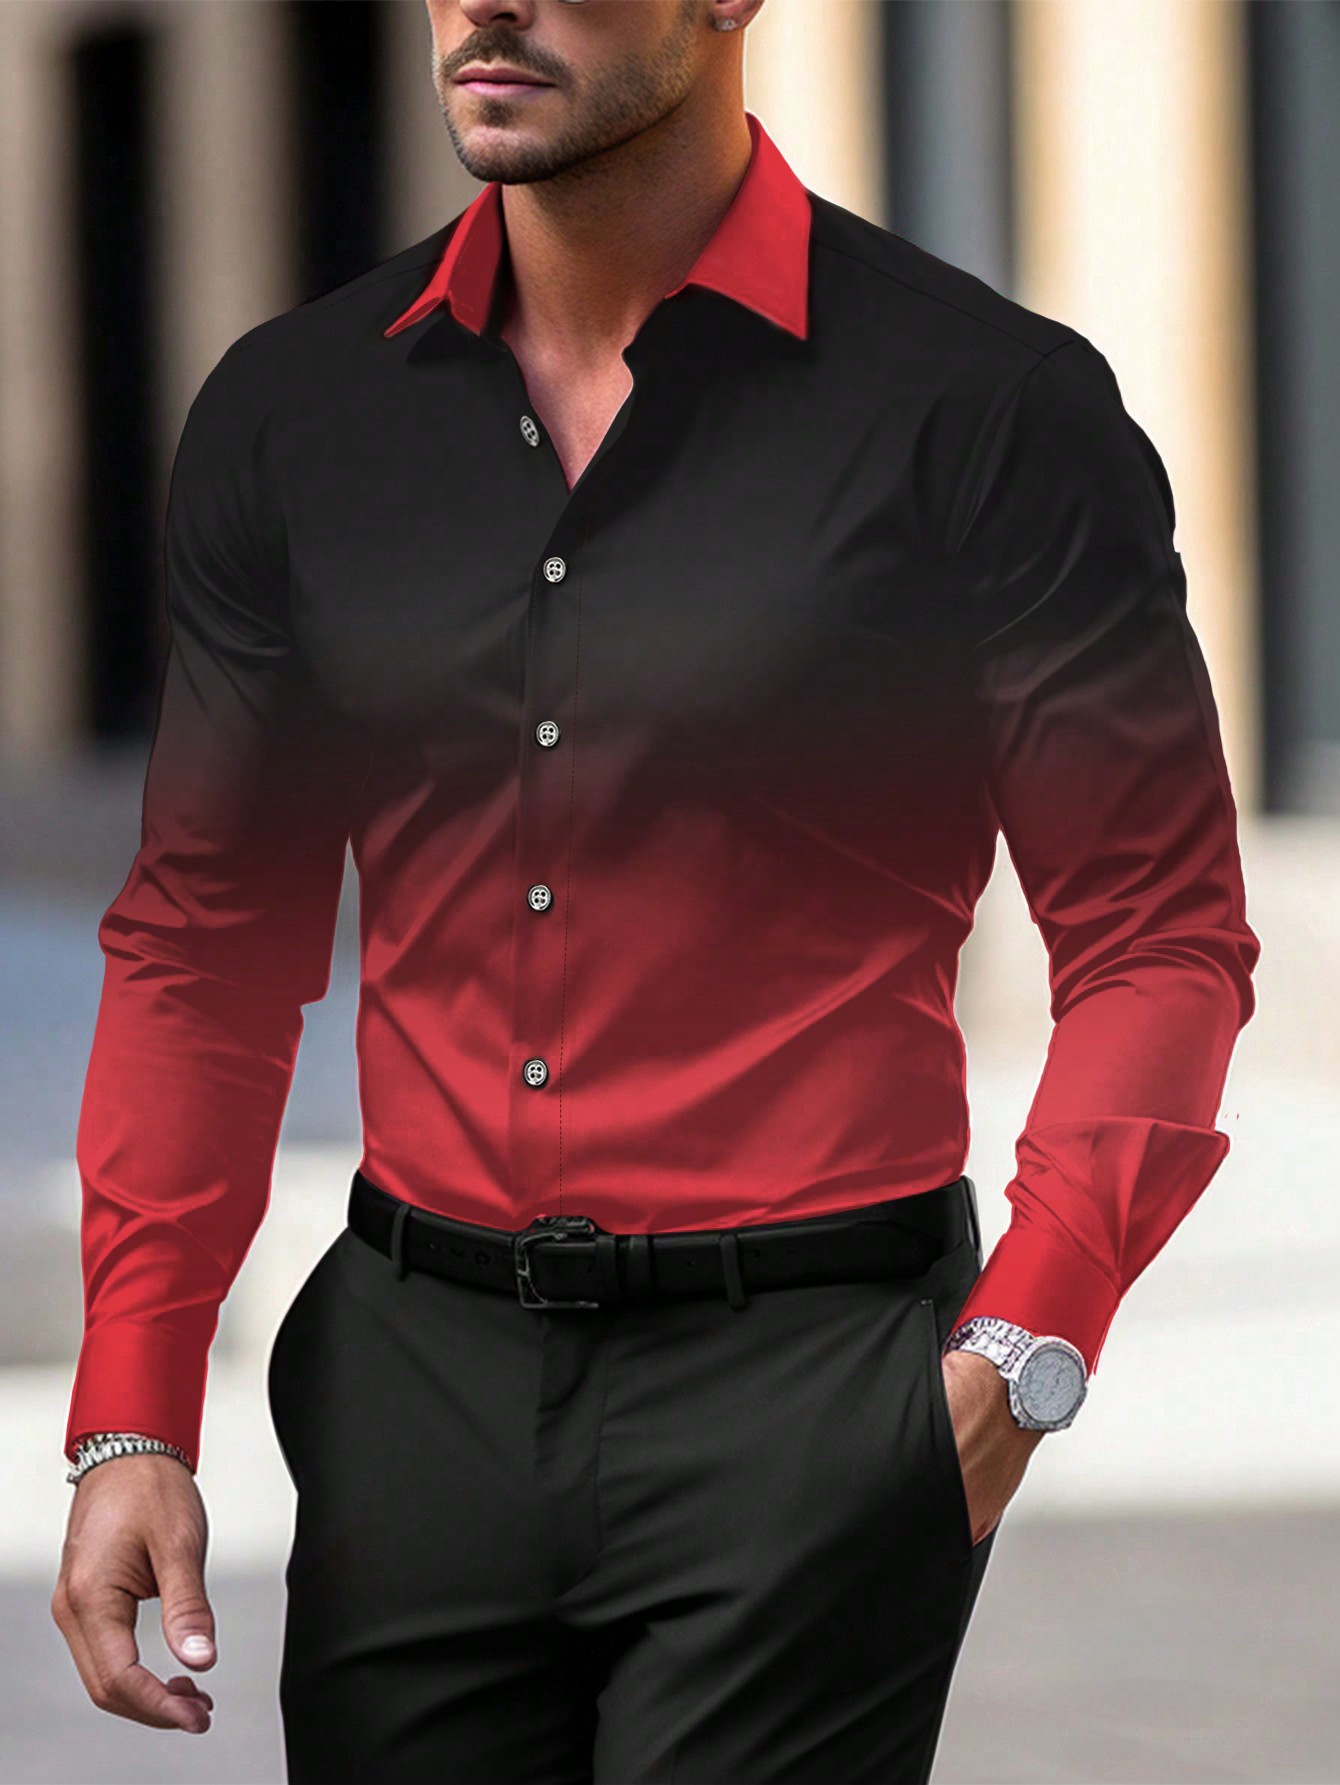 Мужская рубашка градиентного цвета с длинным рукавом Manfinity Homme, красный мужская рубашка с длинным рукавом в клетку в стиле пэчворк